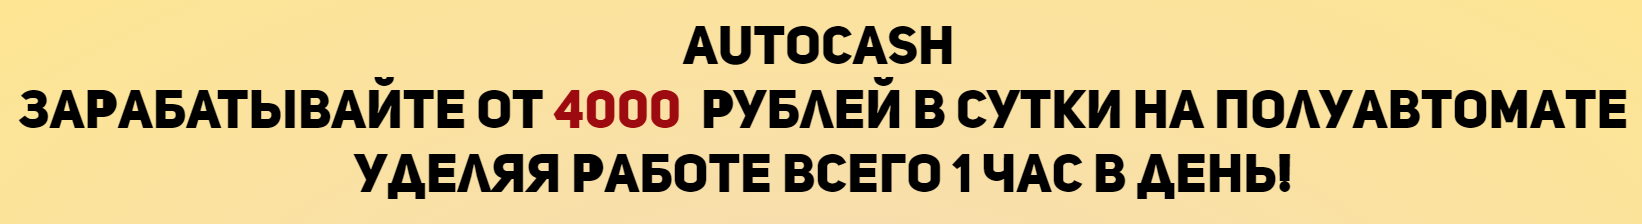 AutoCash, Сергей Штерн